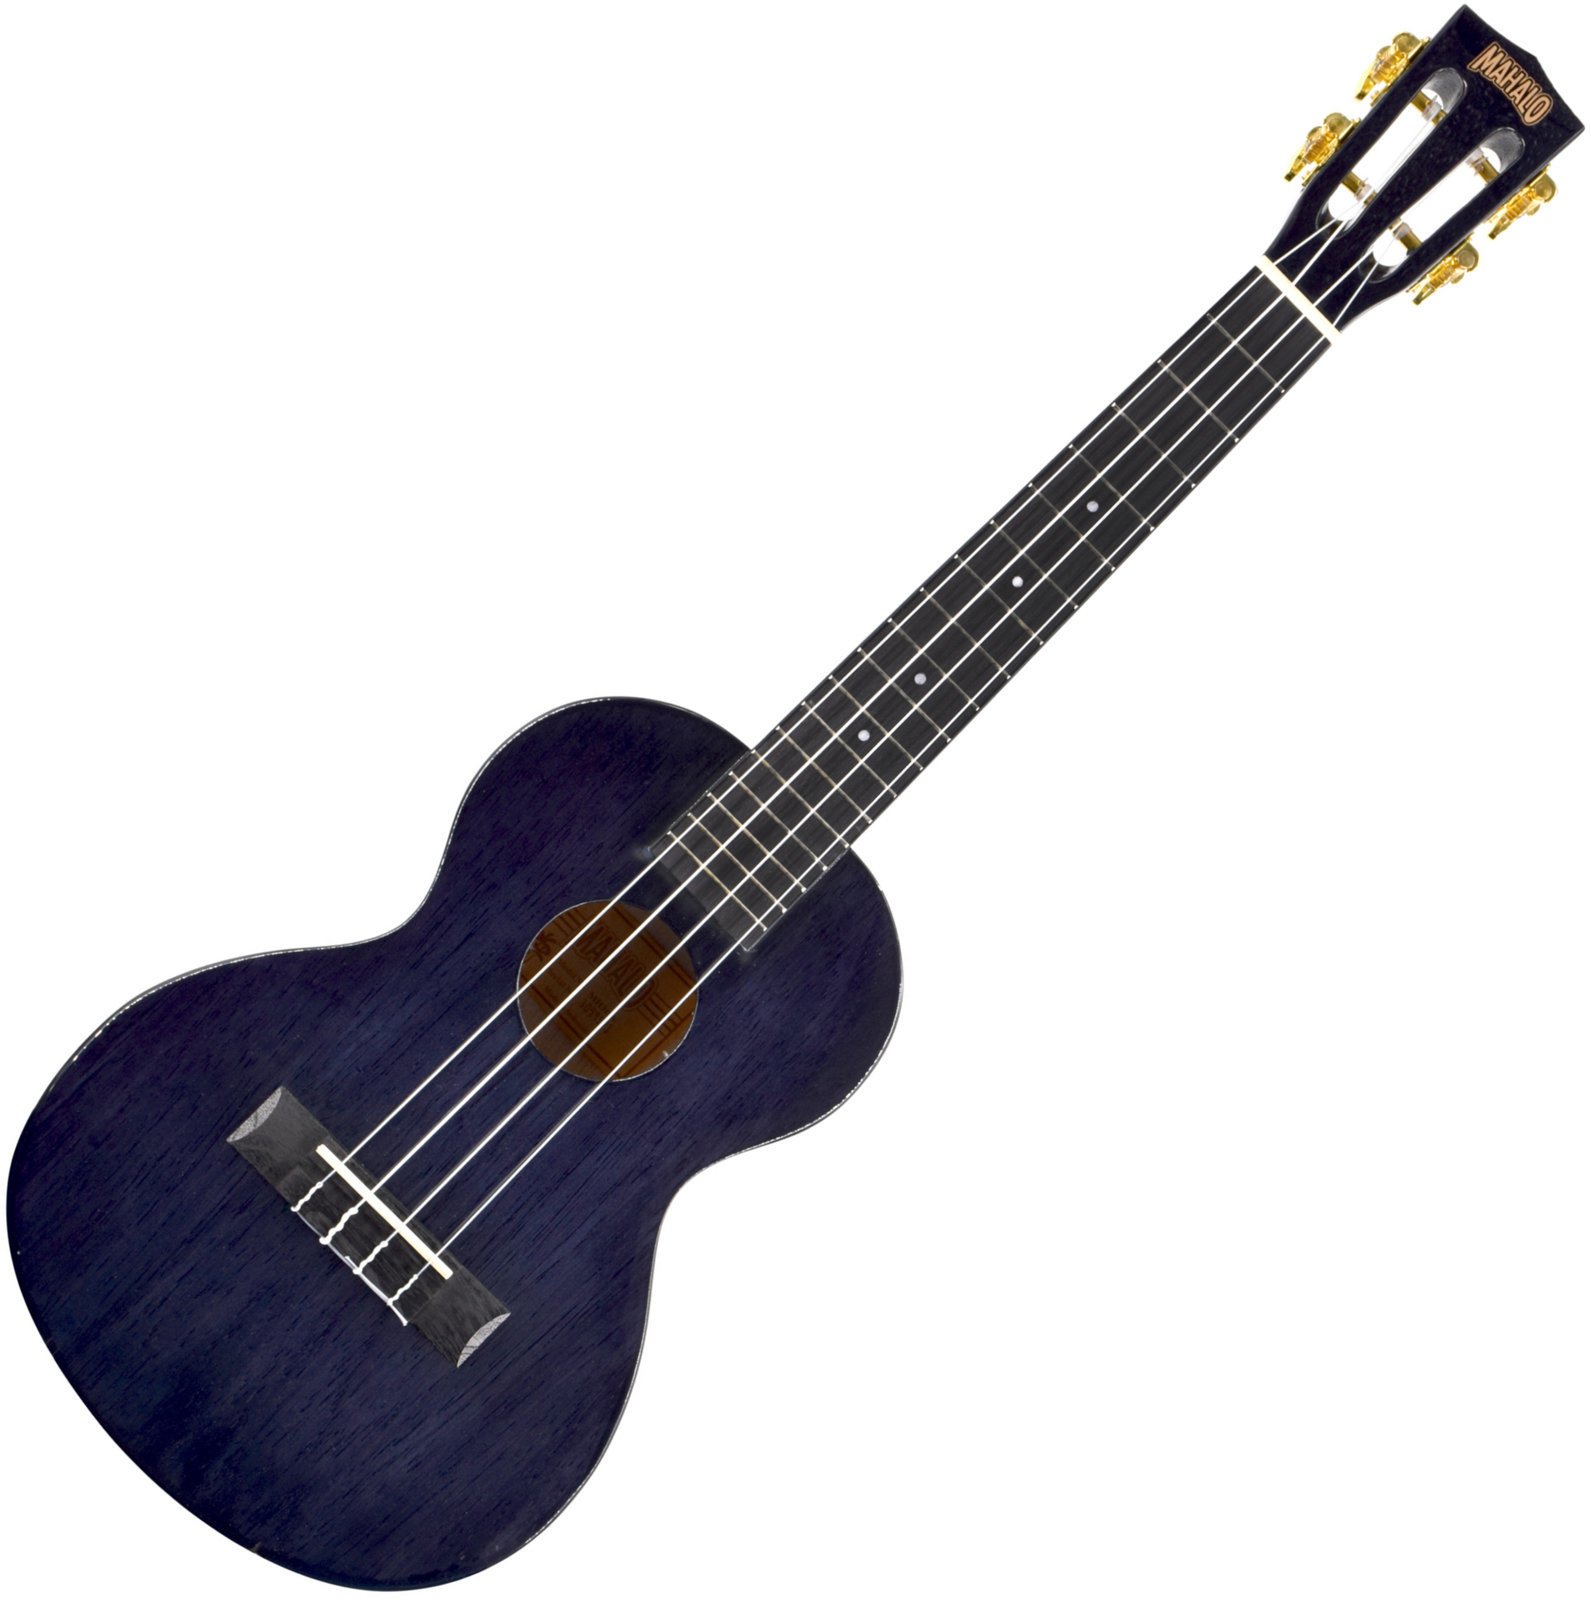 Tenori-ukulele Mahalo MH3 Tenori-ukulele Transparent Black